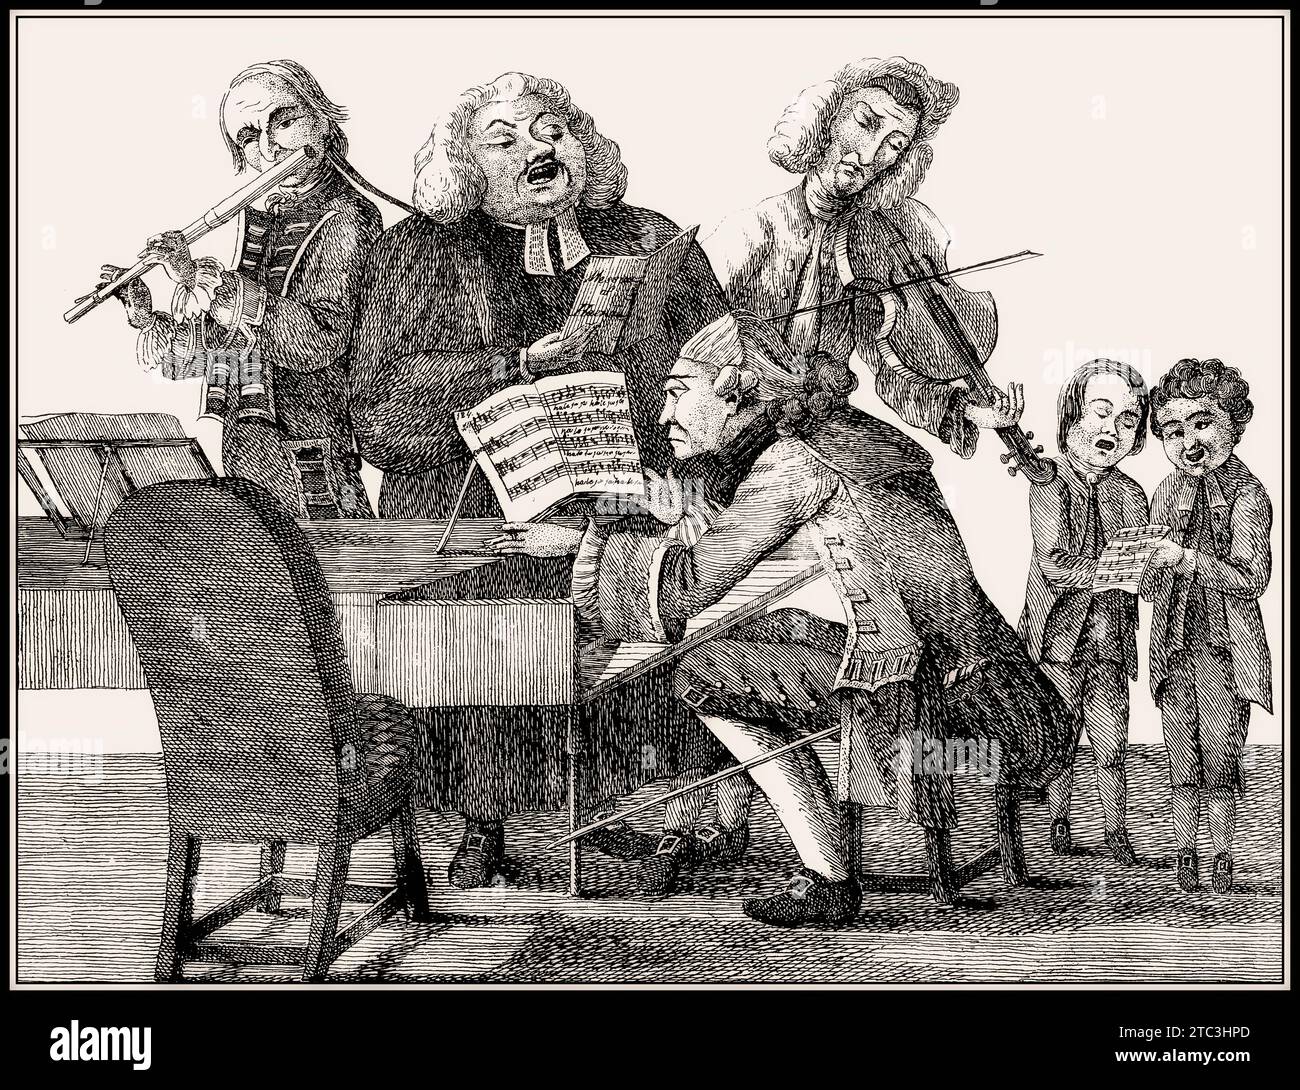 Groupe musical avec Händel, Bach, Tartini, Gluck, Quanz, Jomelli, caricature du 18e siècle Banque D'Images